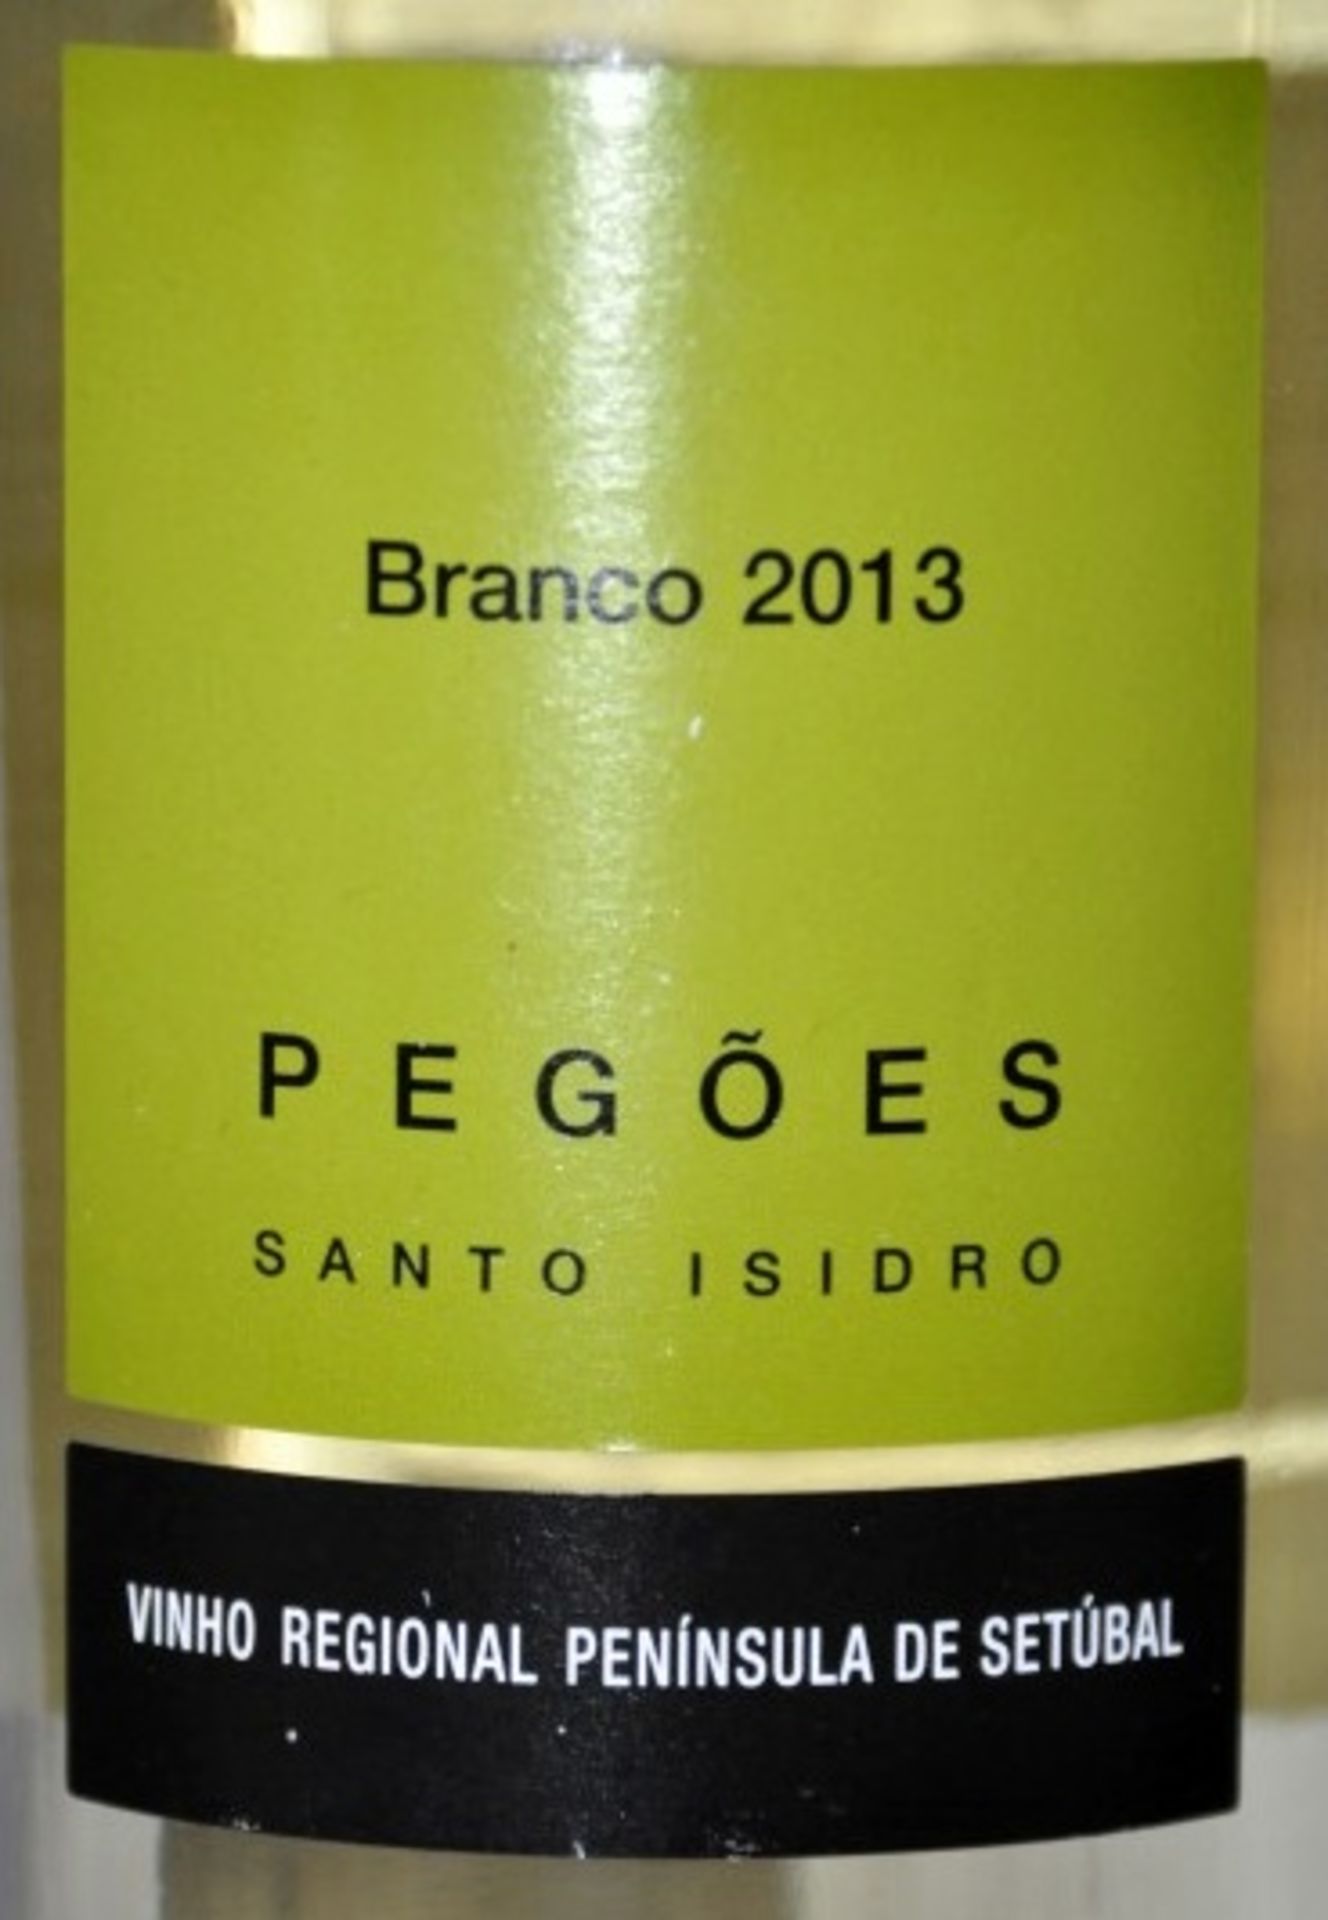 4 x Santo Isidro de Pegoes Fontanario de Pegoes Branco, Portugal – 2013 – Bottle Size 75cl - - Image 2 of 3